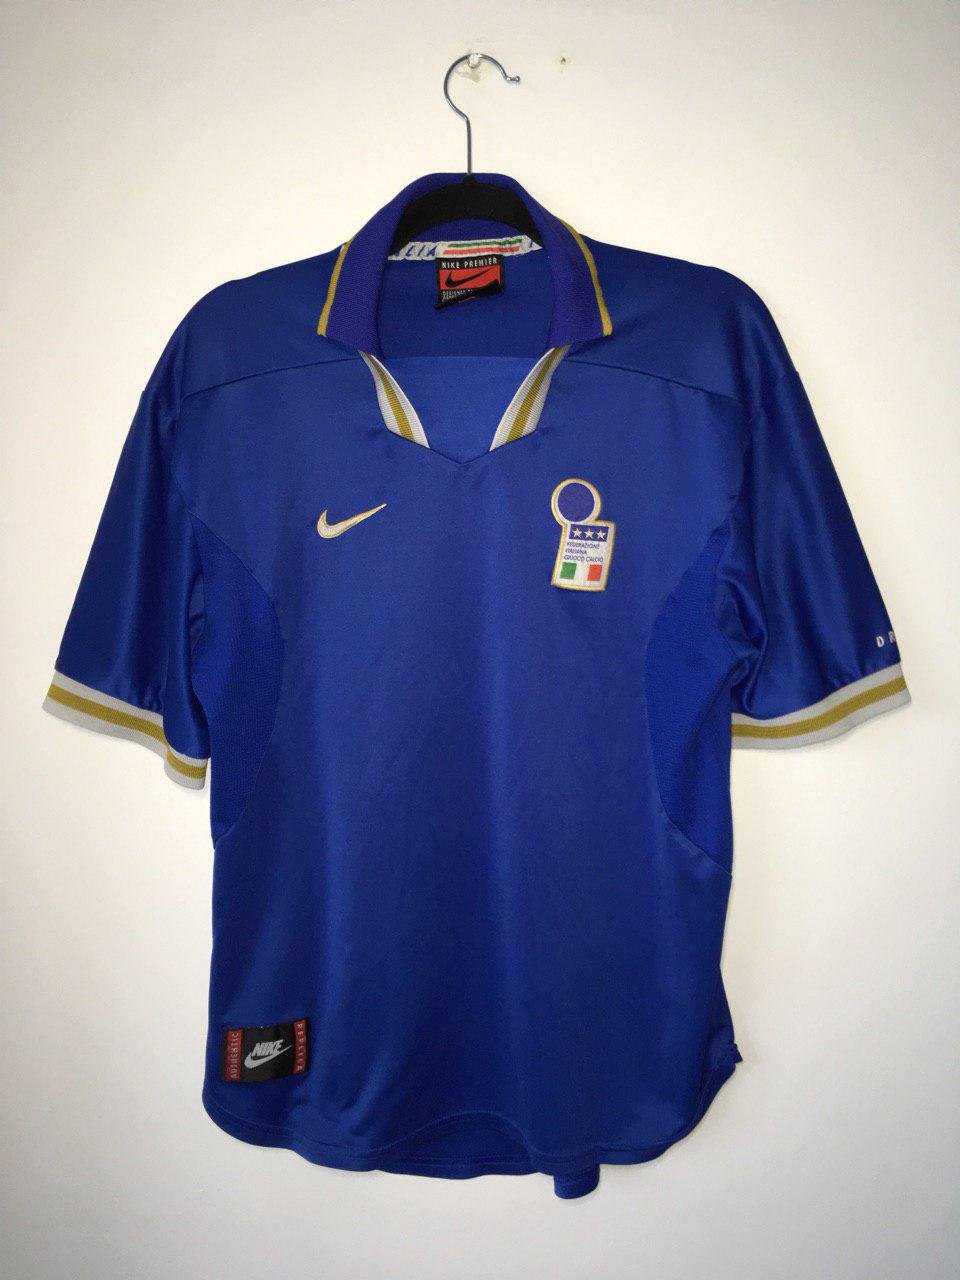 Italy Home football shirt 1996 - 1997.